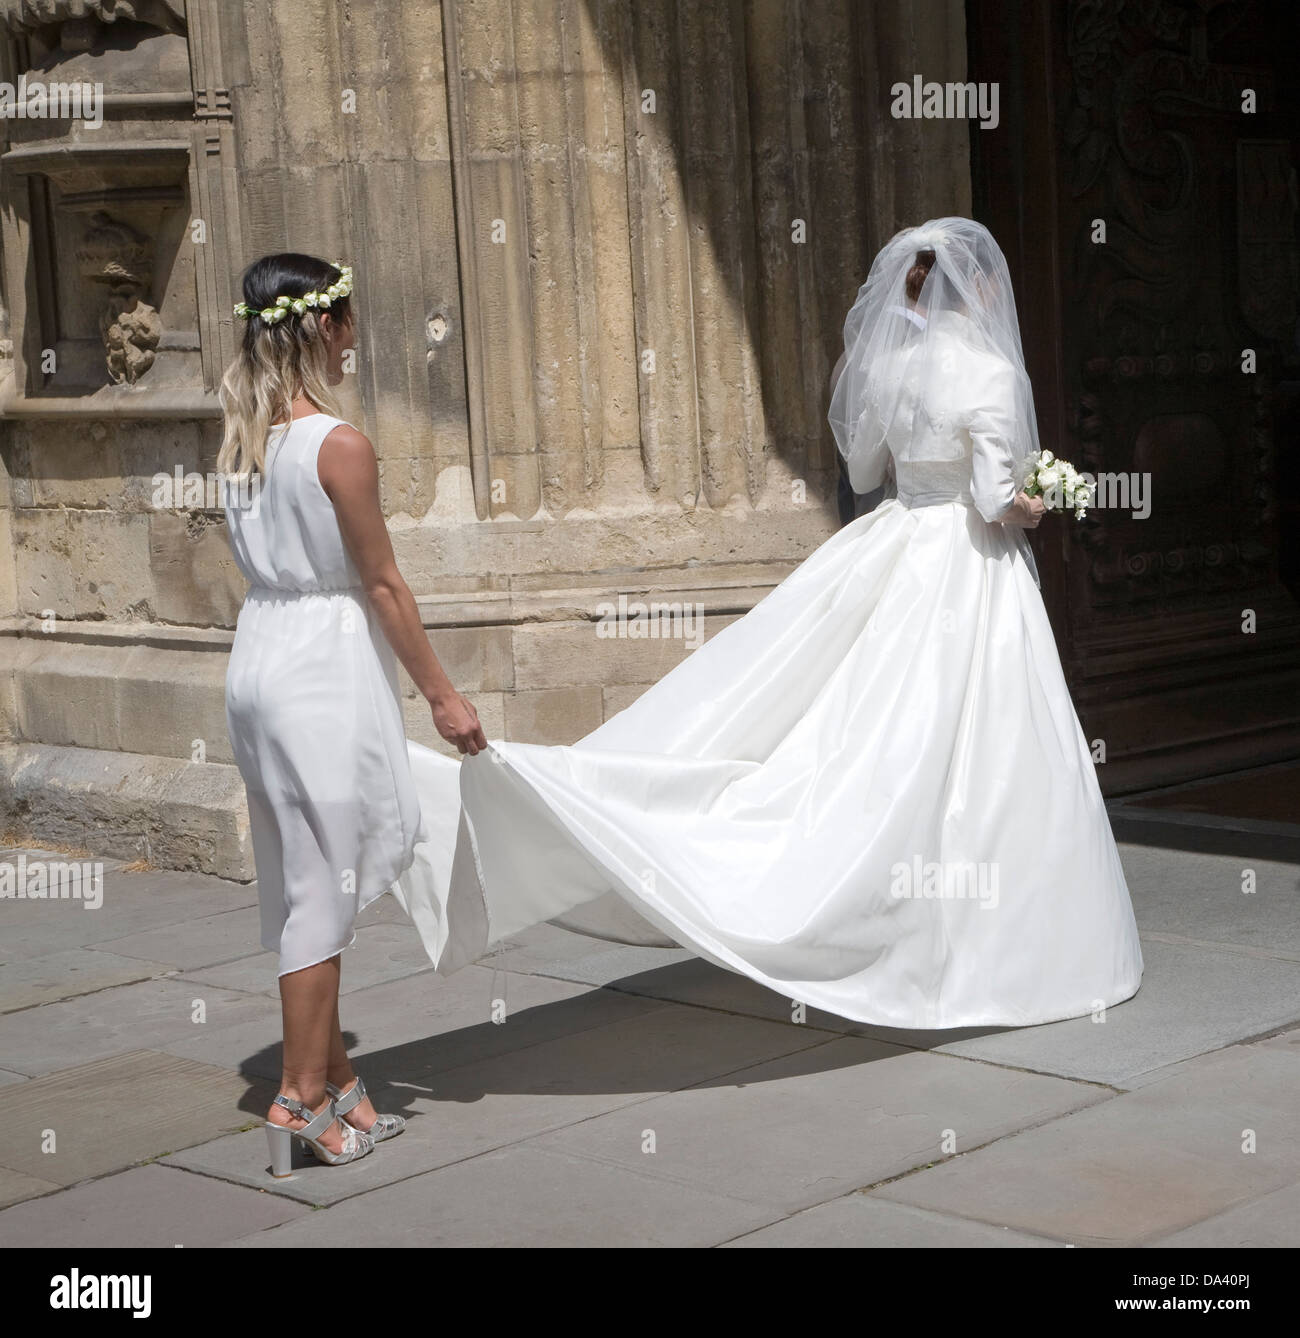 Sposa in abito bianco e la damigella entrando in chiesa, Abbazia di Bath Somerset, Inghilterra Foto Stock